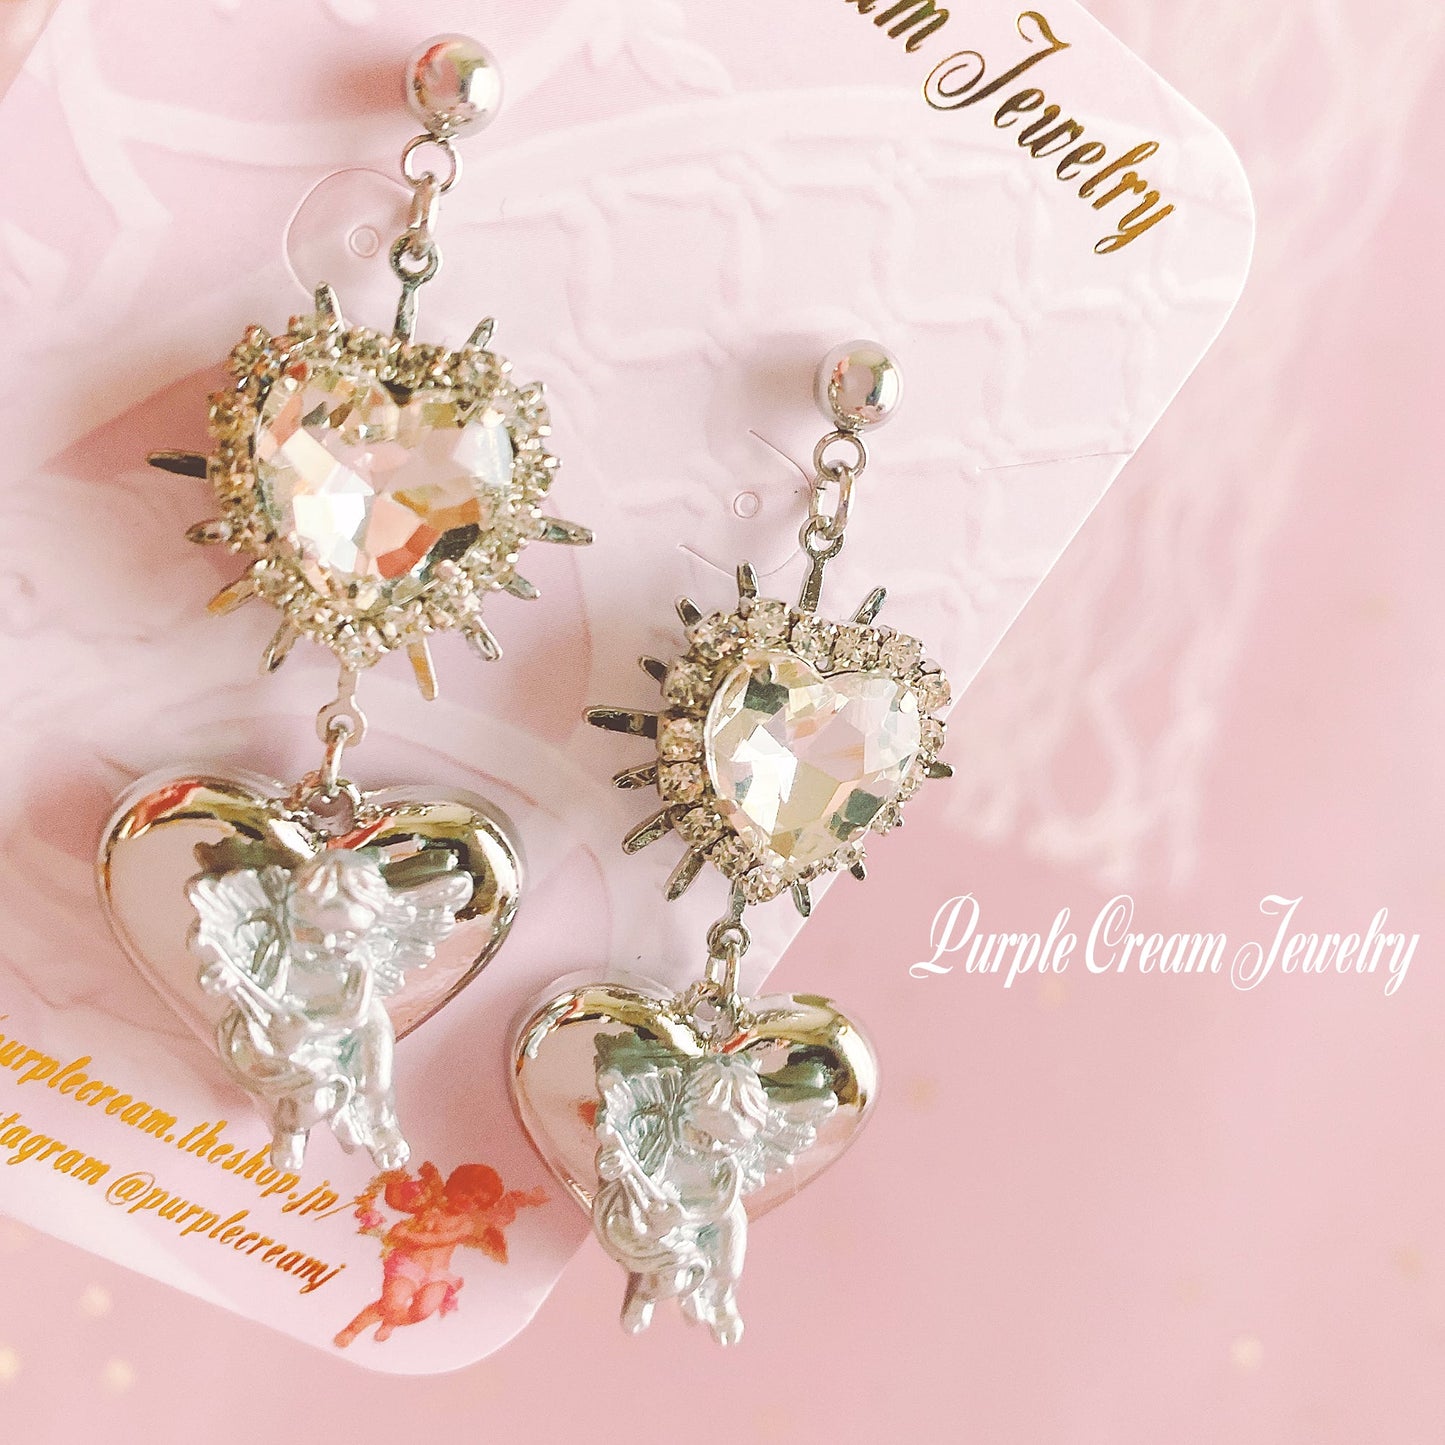 Purple Cream Silver Heart Angel Earrings P1170